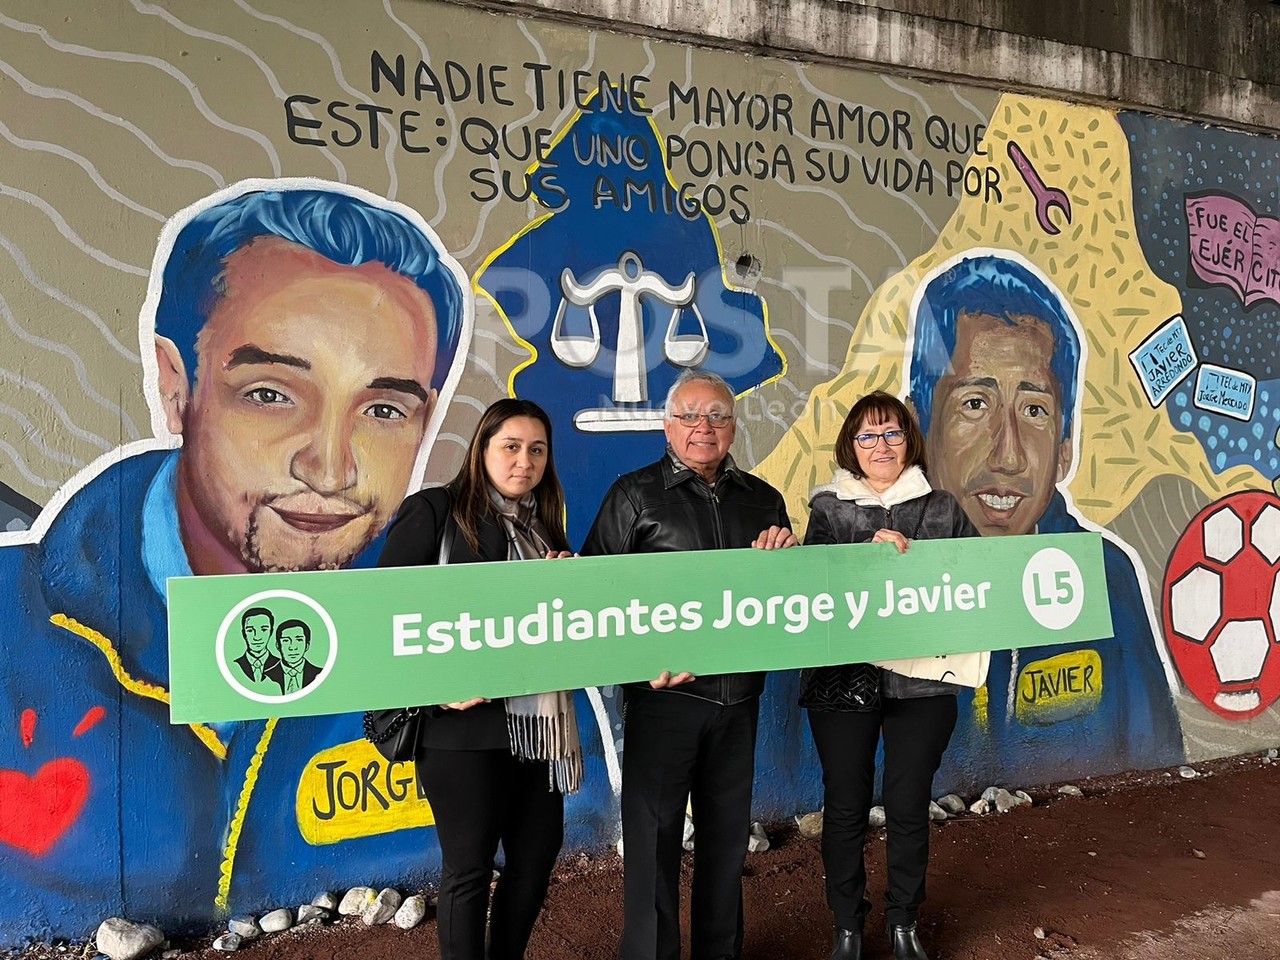 Crean propuesta de imagen para estación del Metro “Estudiantes Jorge y Javier”